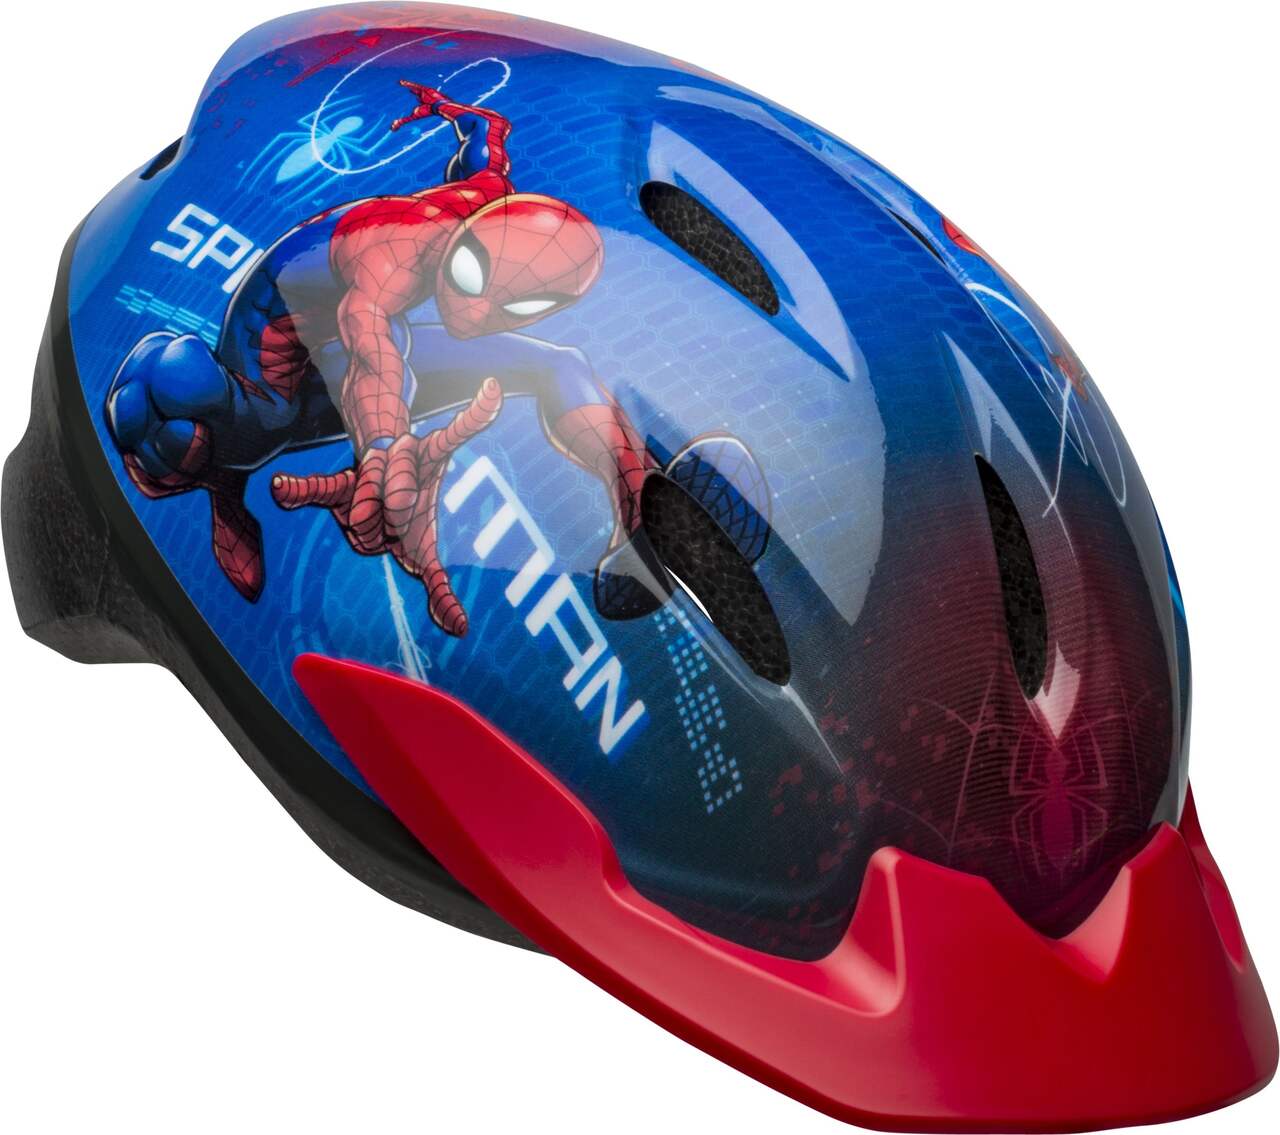 Casque de vélo Marvel Spiderman pour enfants avec sangles réglables,  bleu/rouge, 5 à 13 ans